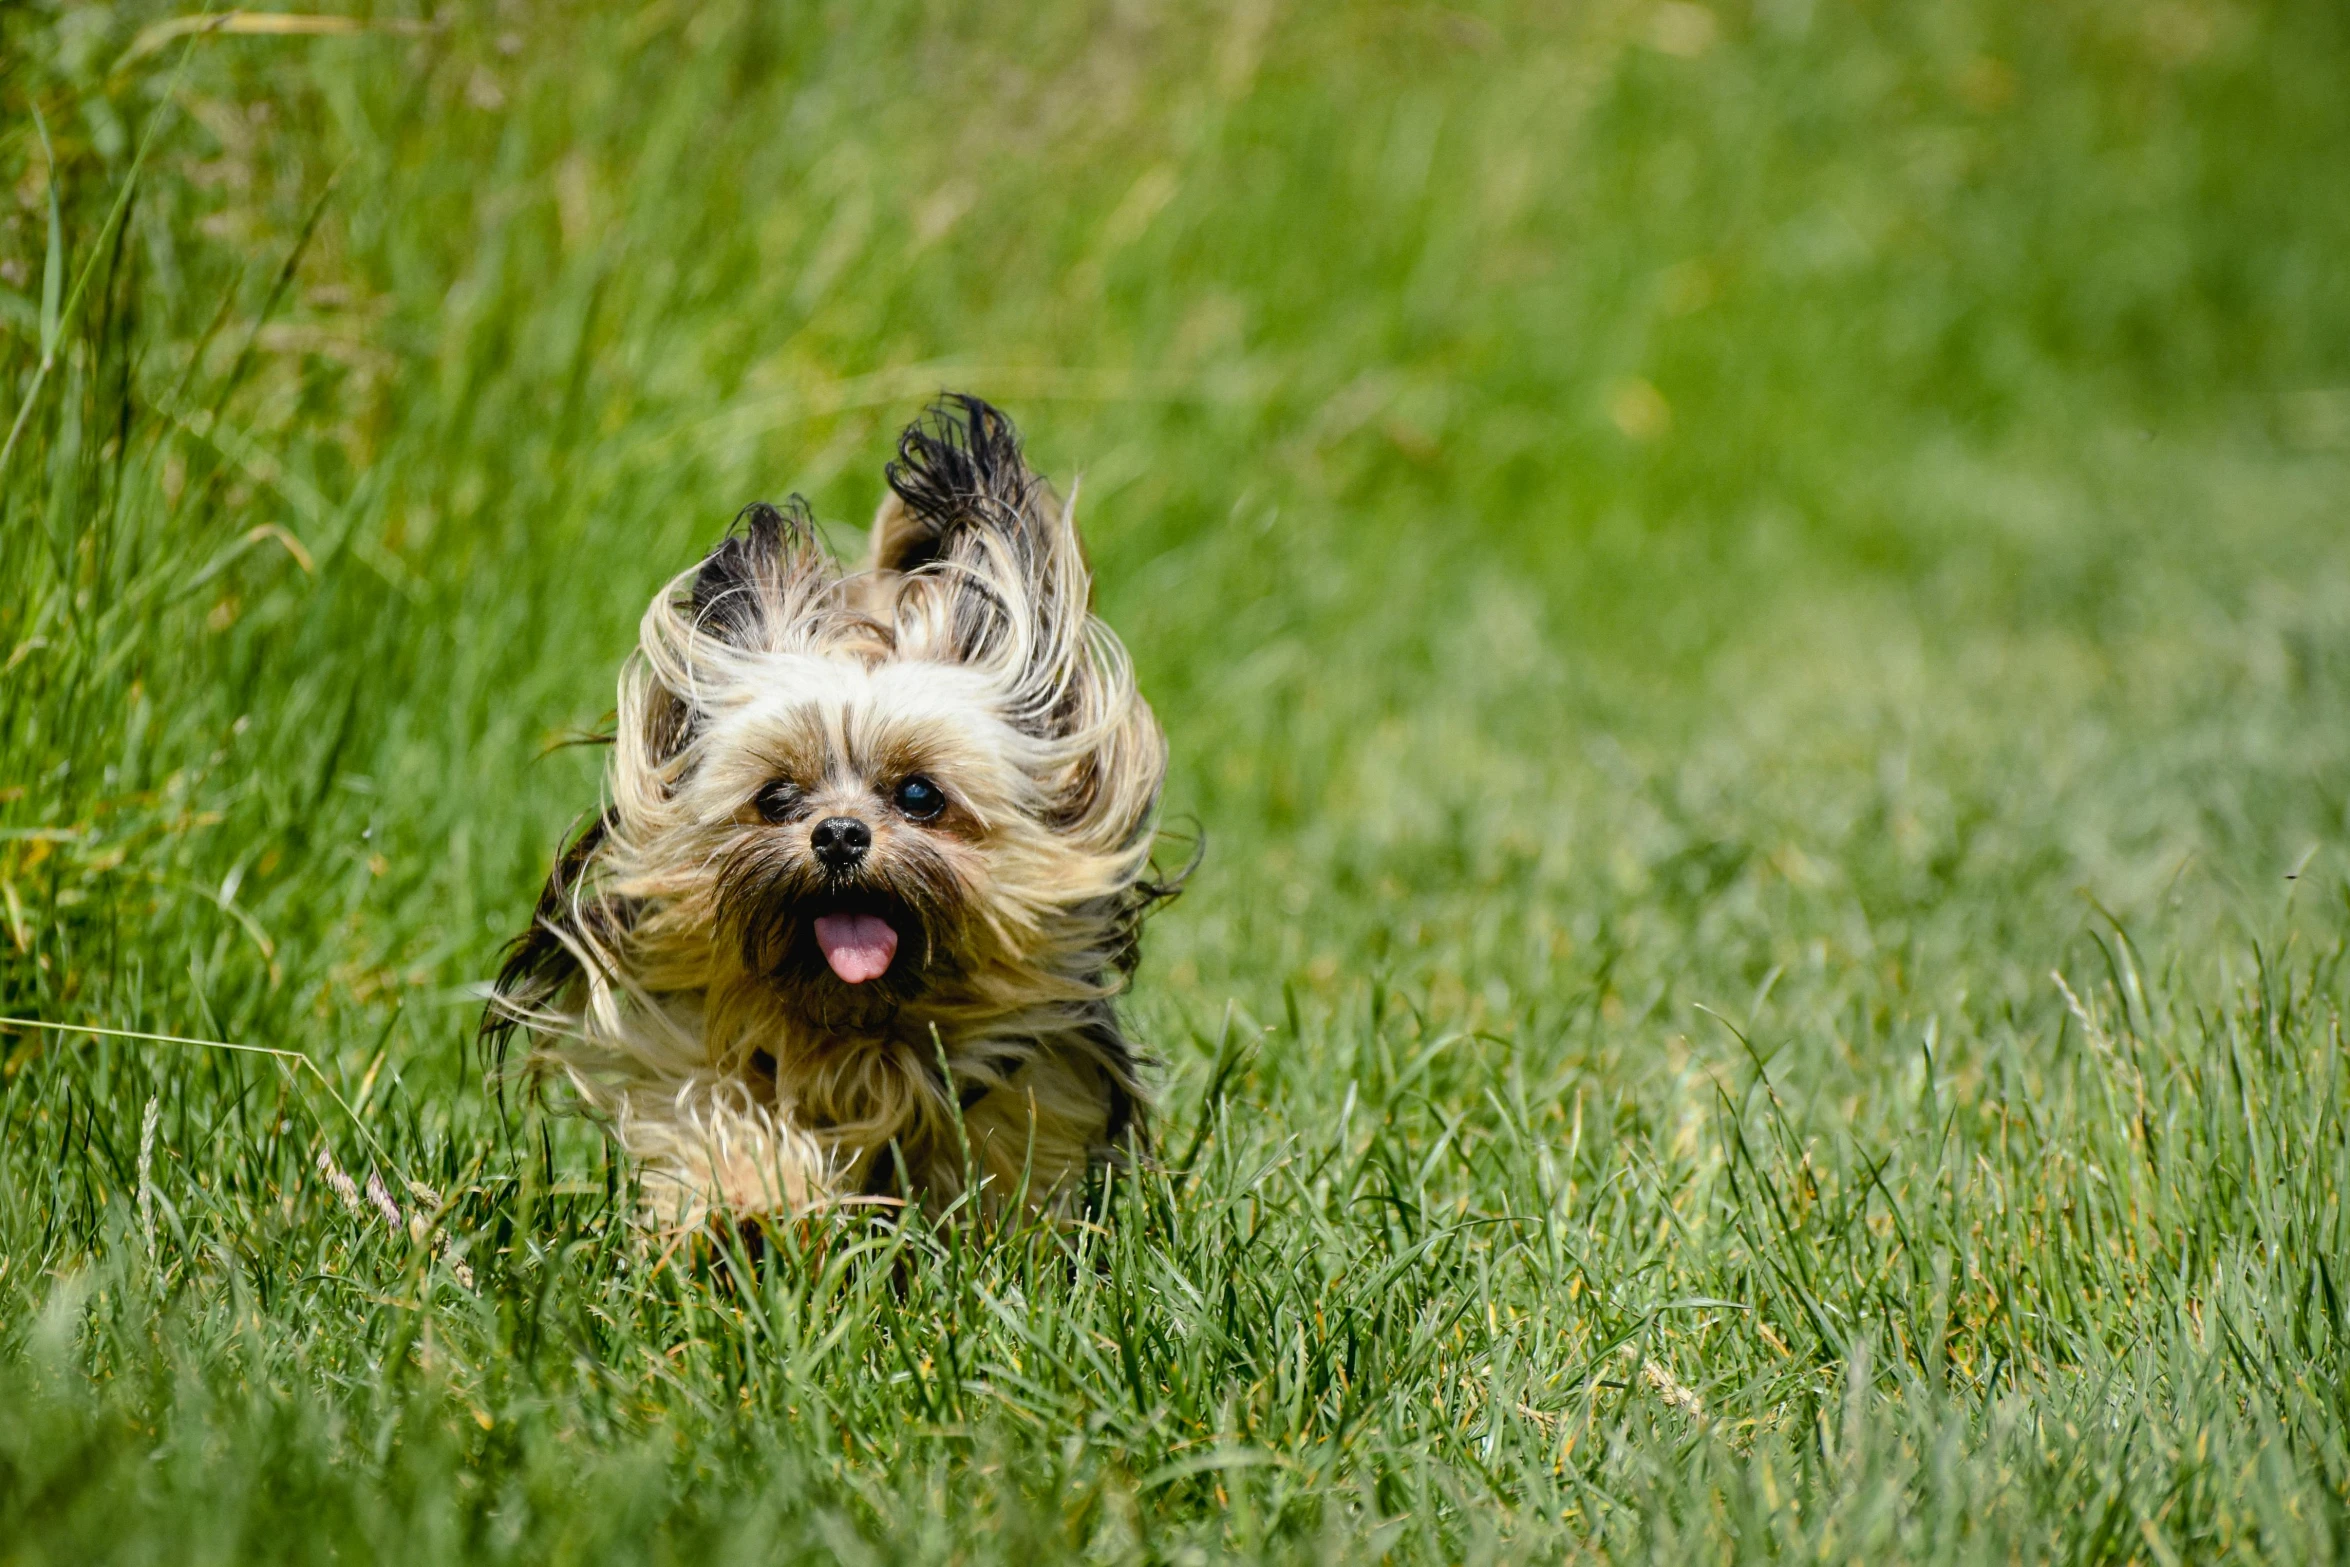 a small dog runs through the grass towards the camera